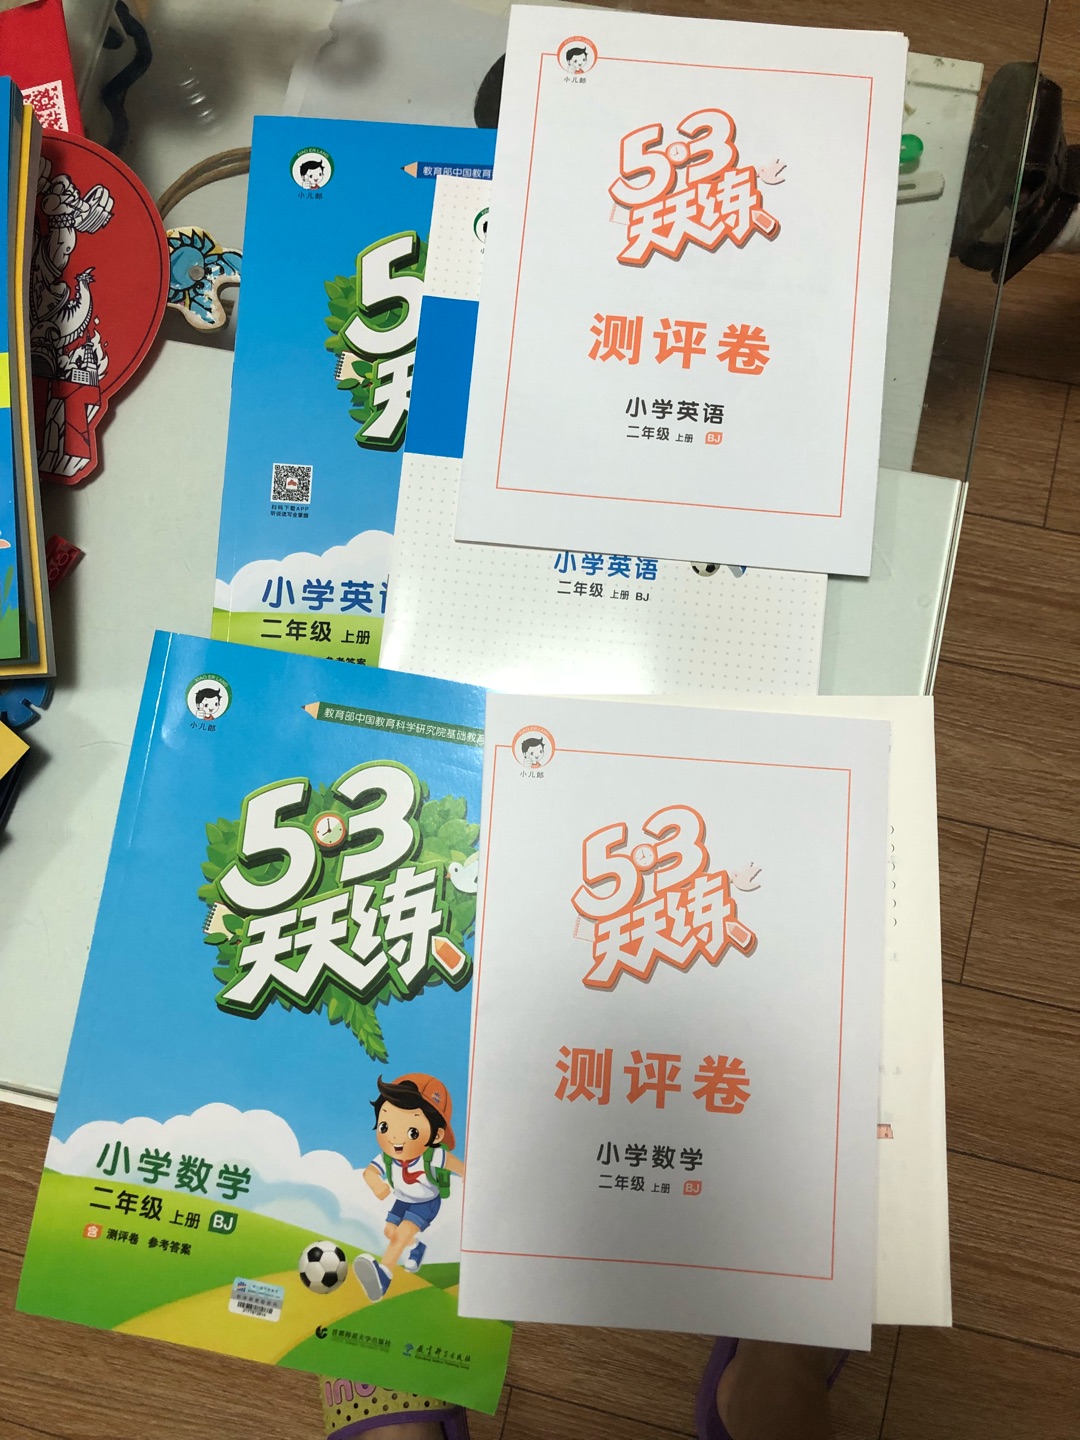 质量还挺好的，就是语文版没有北京的，要是有北京的就好了，可以配套给小孩使用。